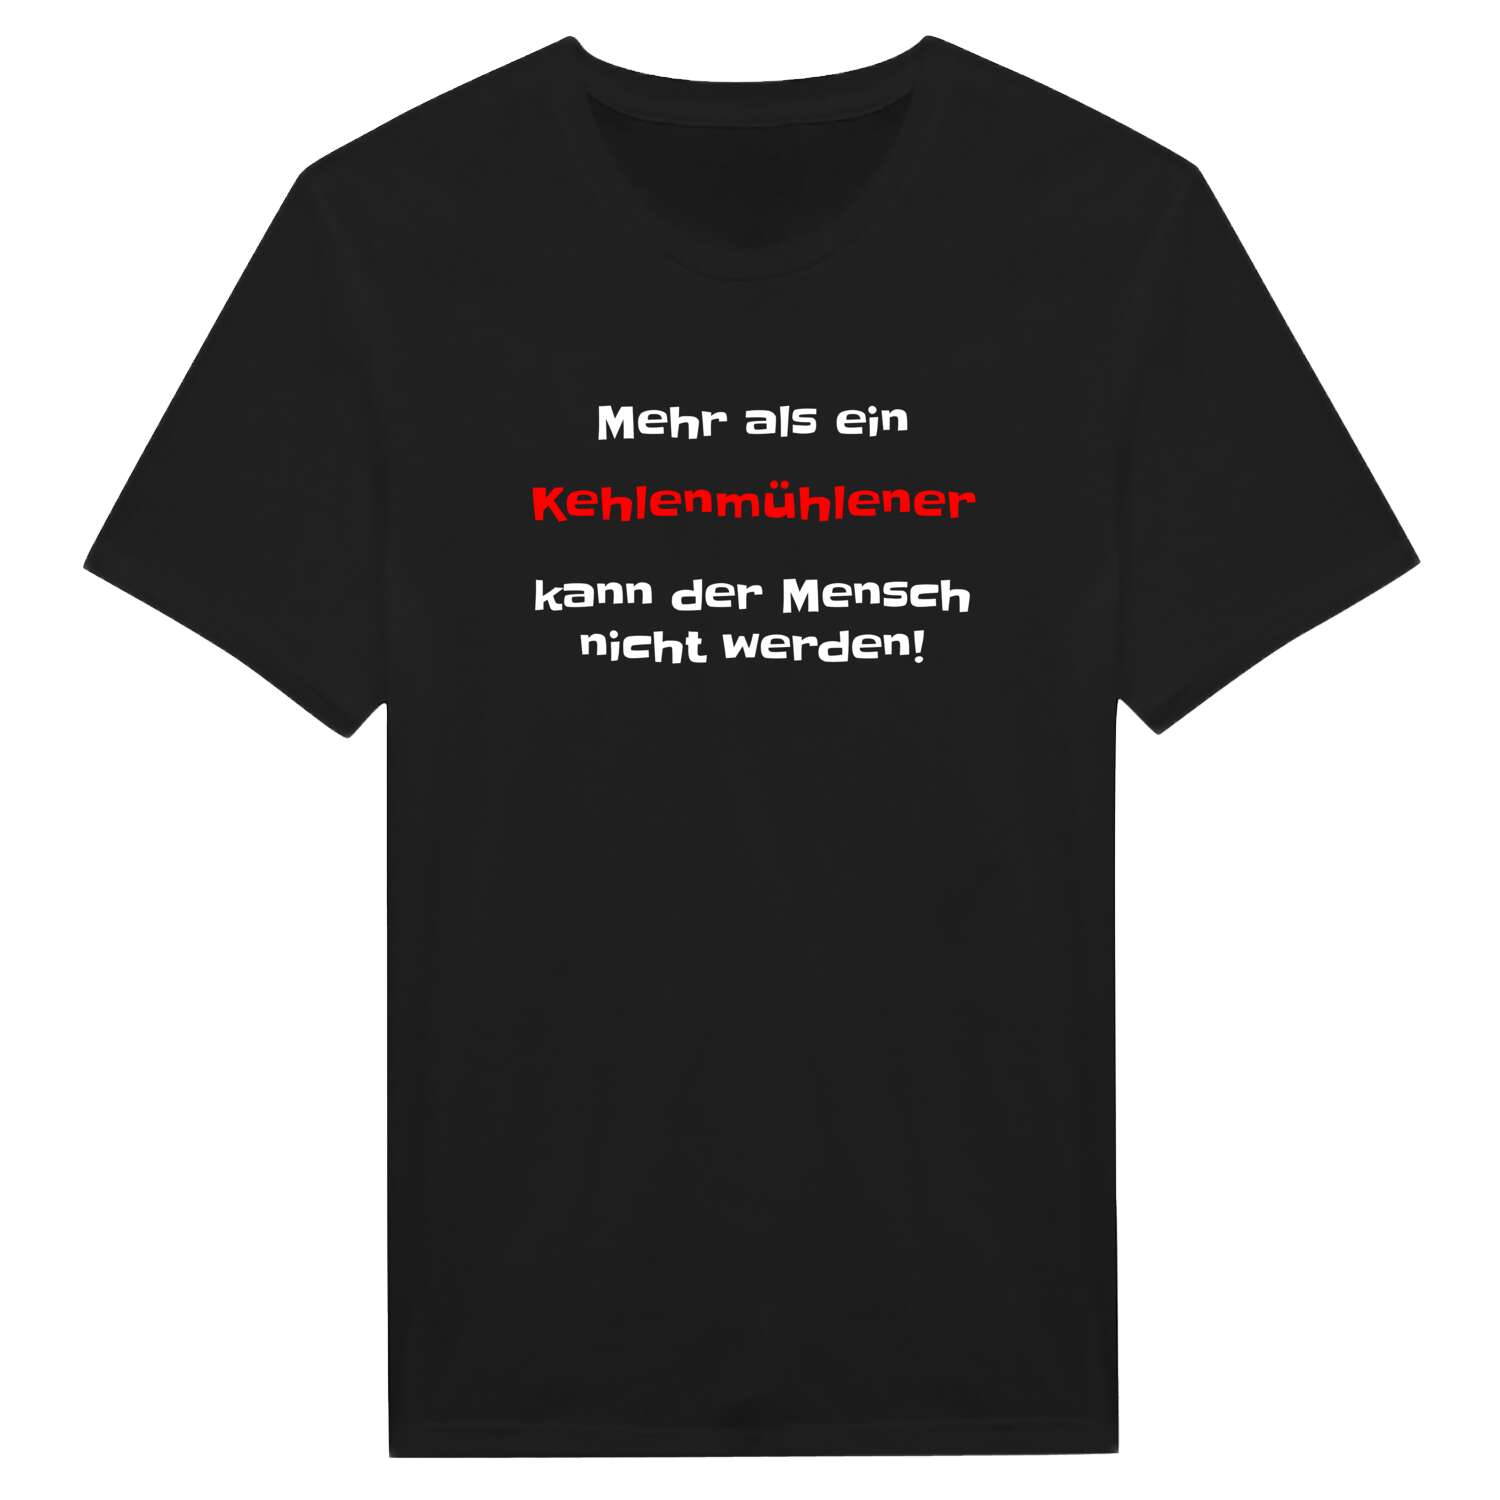 Kehlenmühle T-Shirt »Mehr als ein«